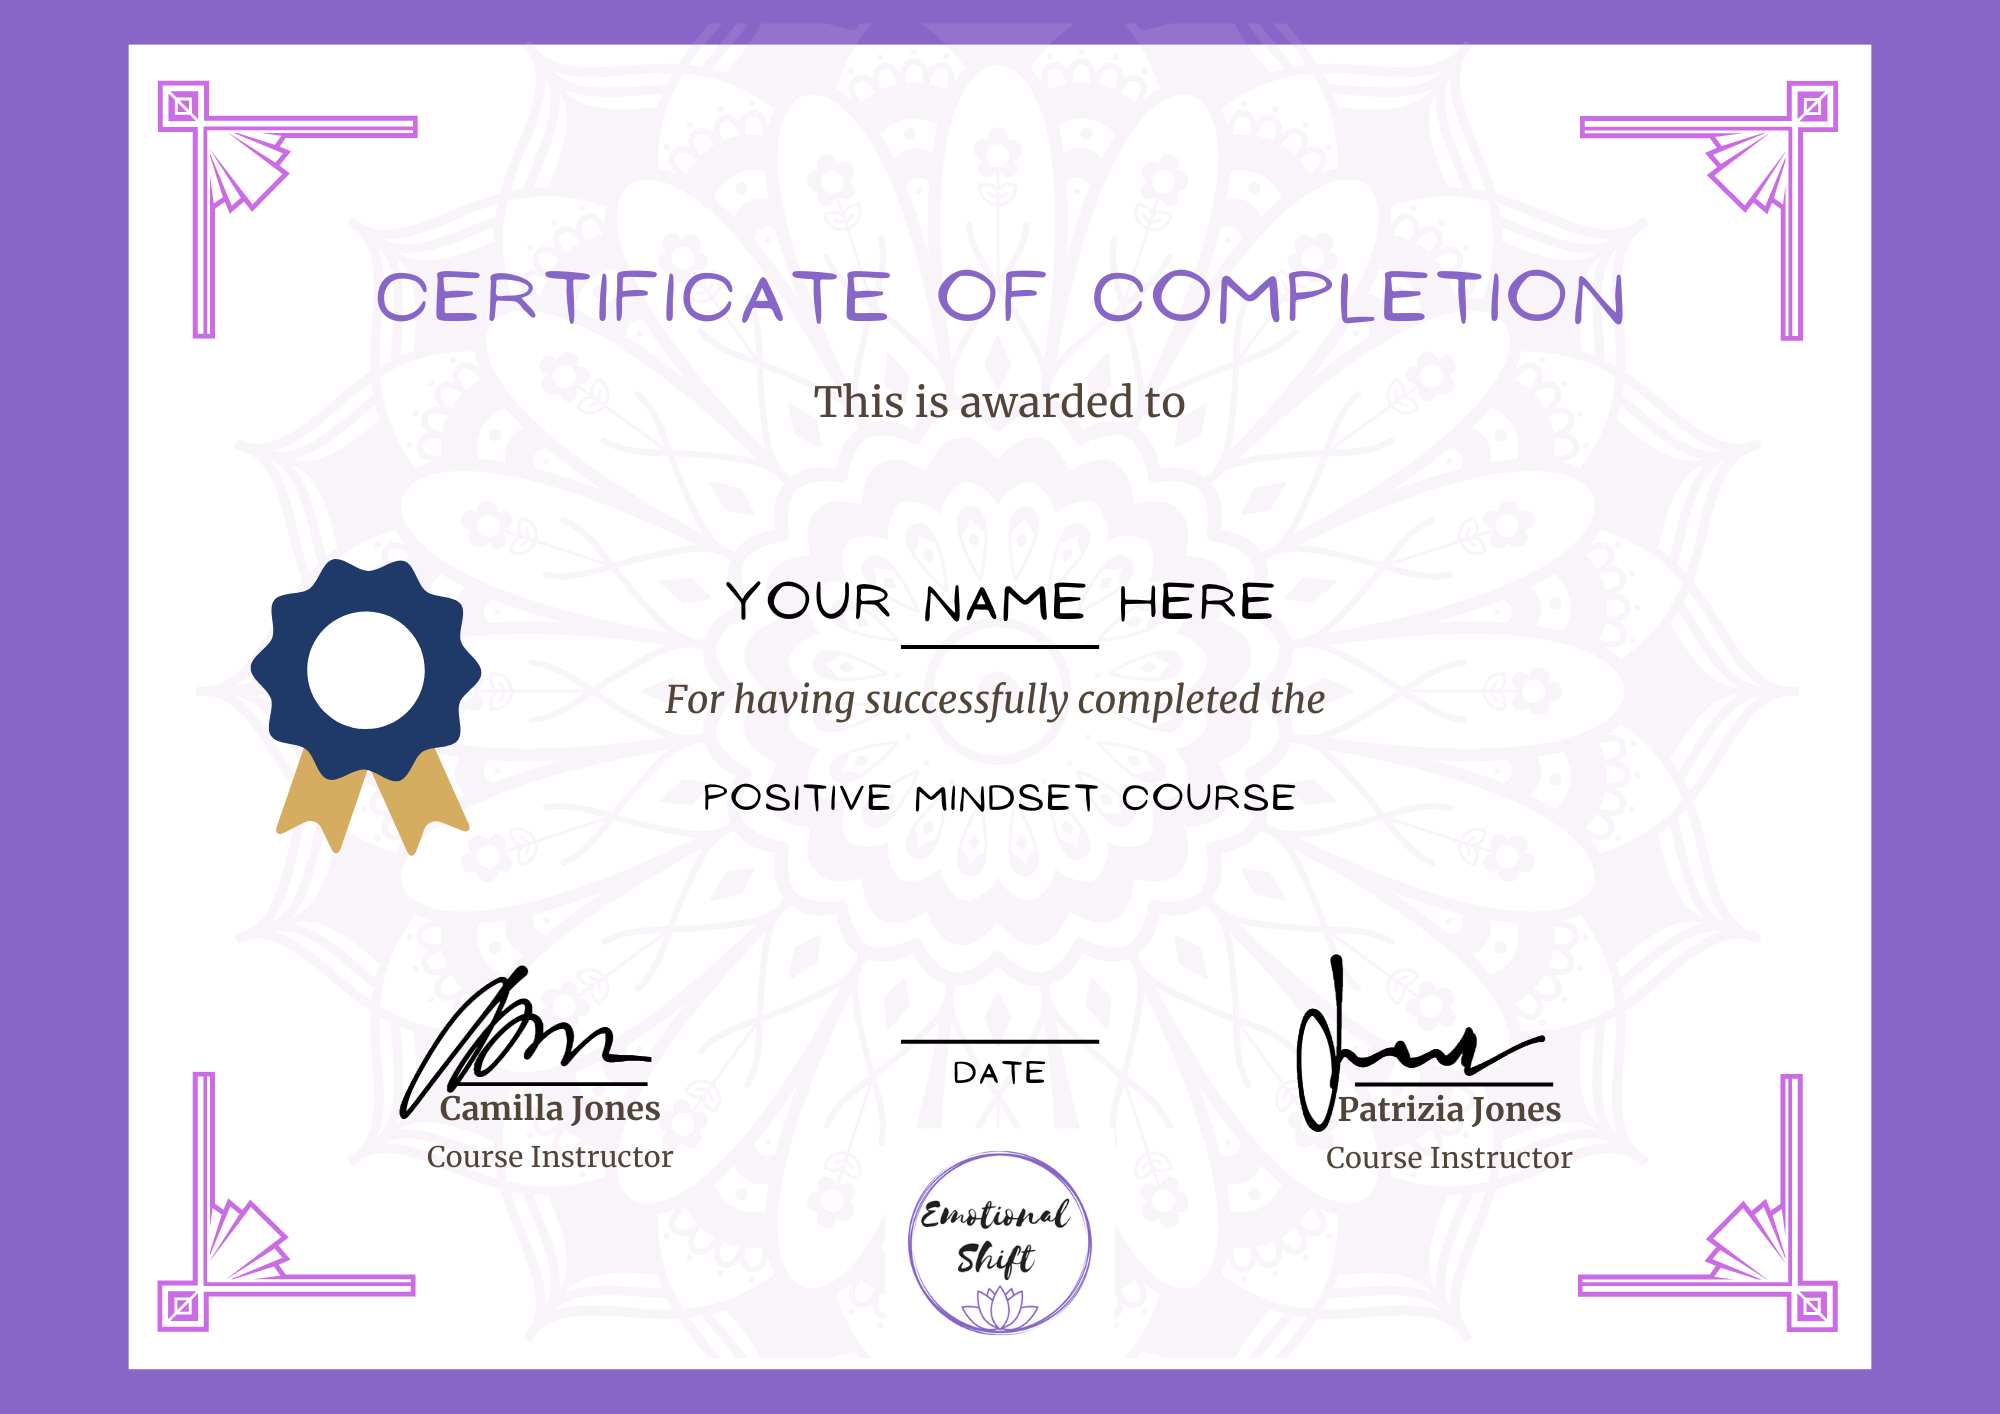 Positive Mindset course certificate